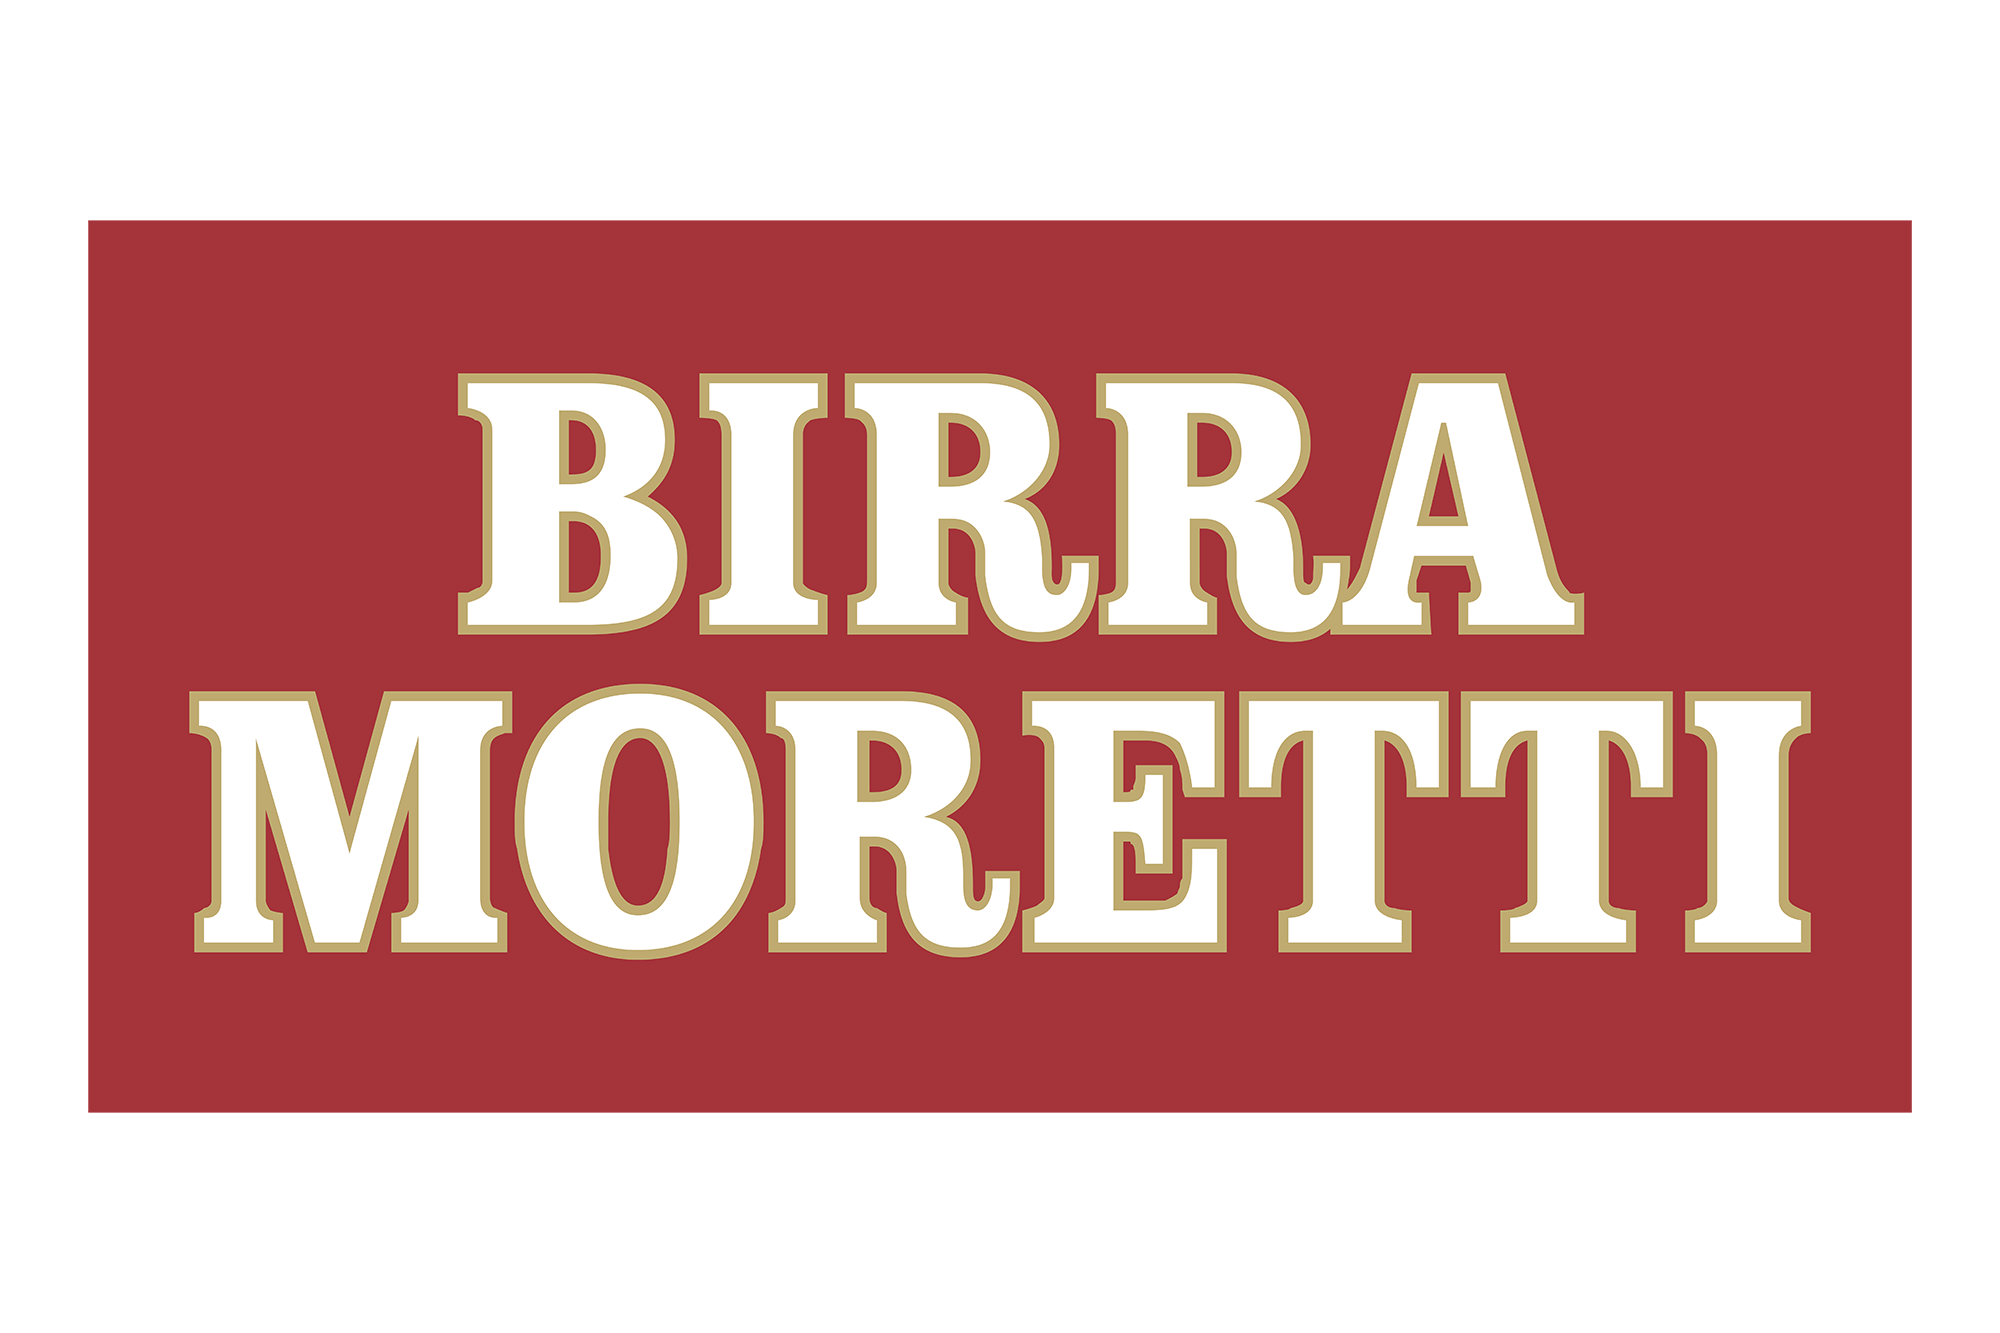 birra-moretti-02-logo-svg-vector.png